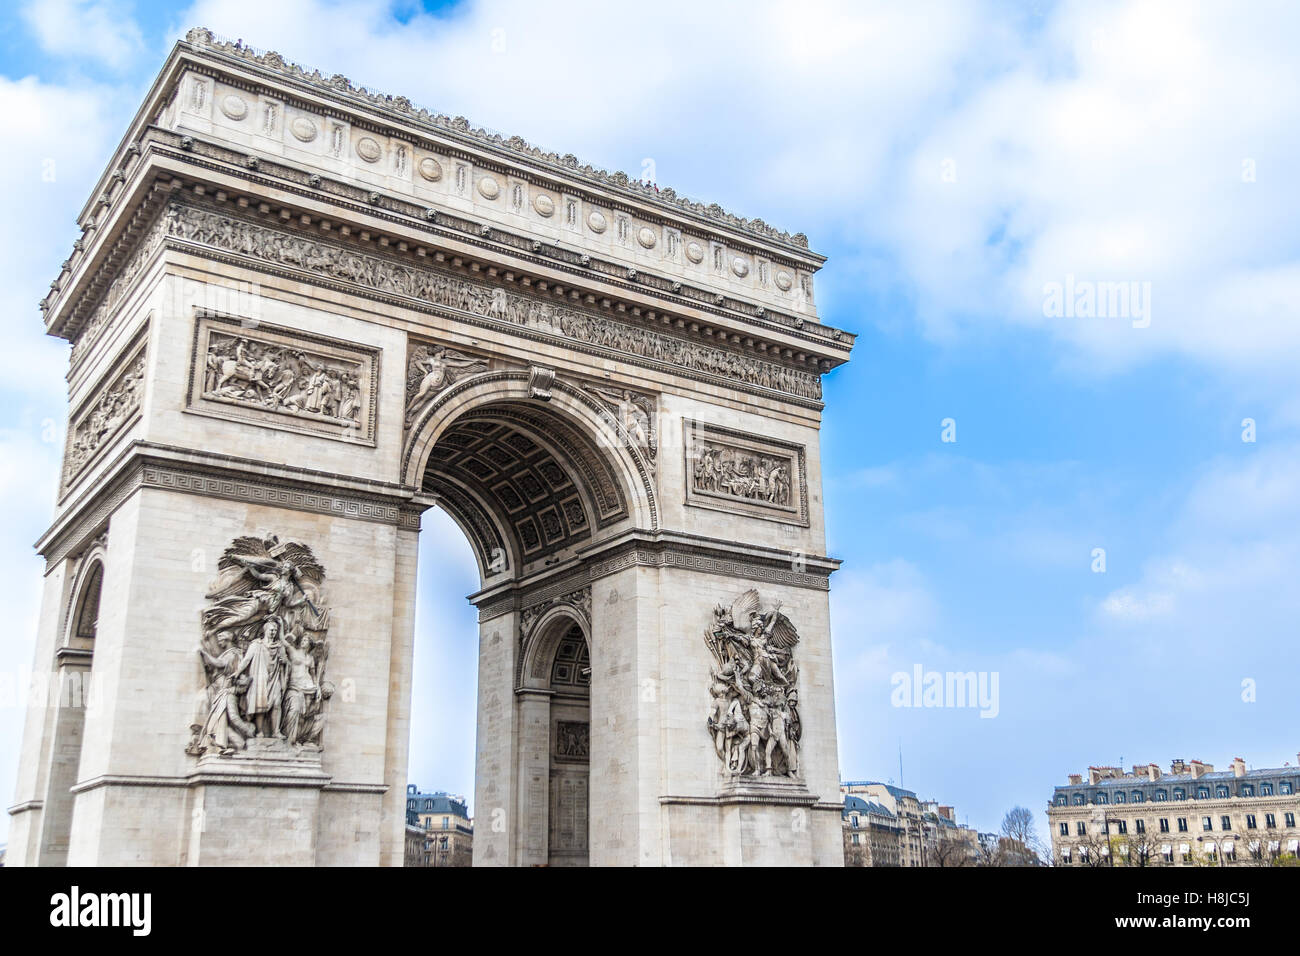 The Arc de Triomphe, Paris, France. Stock Photo